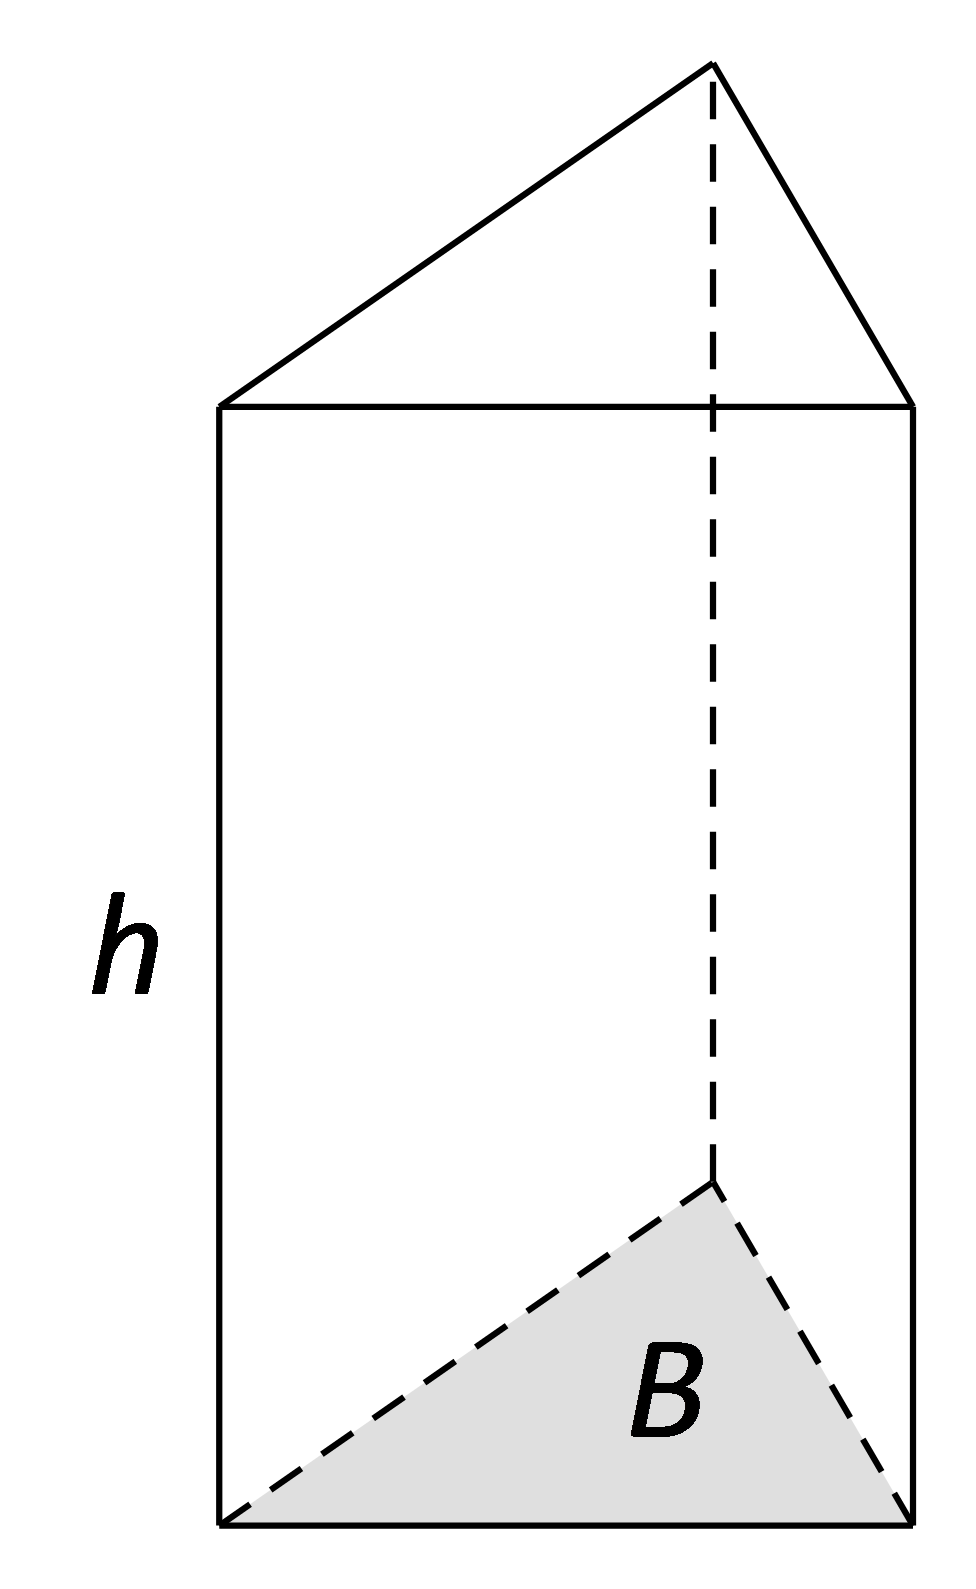 Slika prikazuje pravilnu trostranu prizmu s osjenčanom bazom i istaknutom visinom prizme.